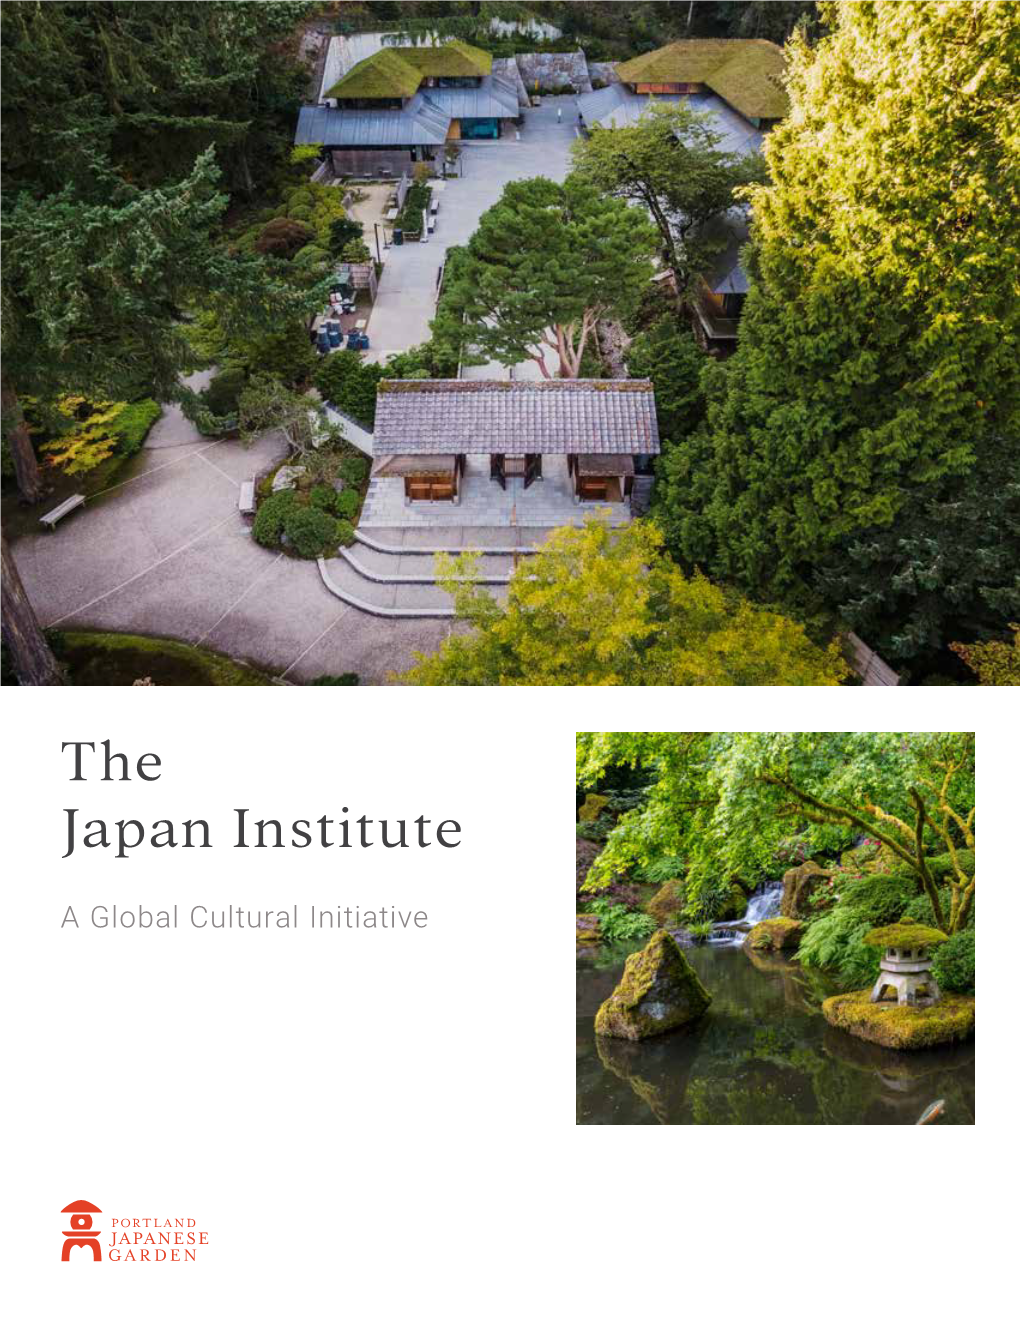 The Japan Institute